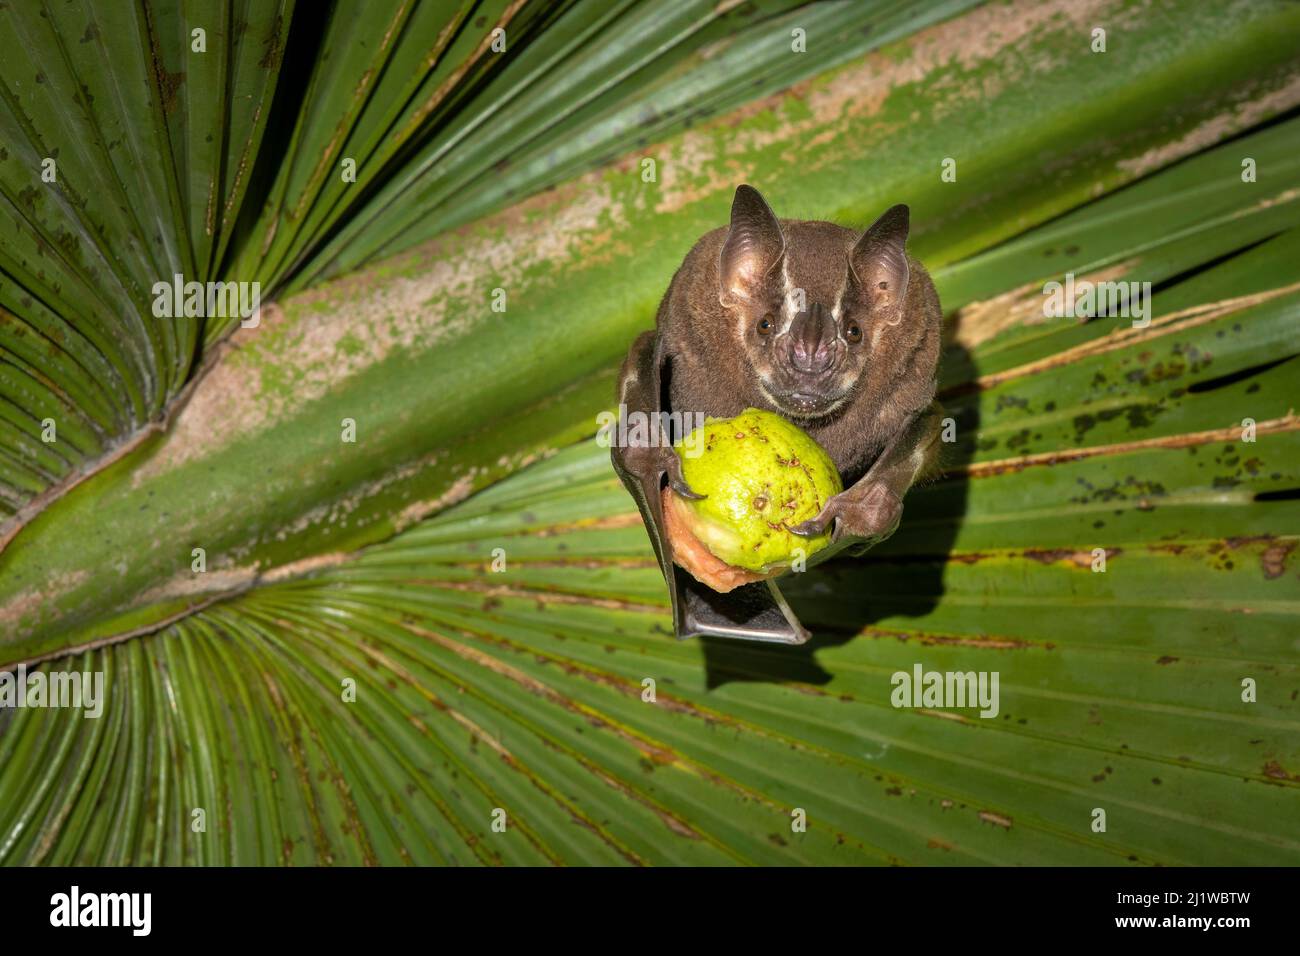 Chauve-souris brune (Uroderma magirostrum) se nourrissant de fruits sous une feuille de palmier, forêt tropicale des basses terres, Costa Rica. Novembre. Banque D'Images